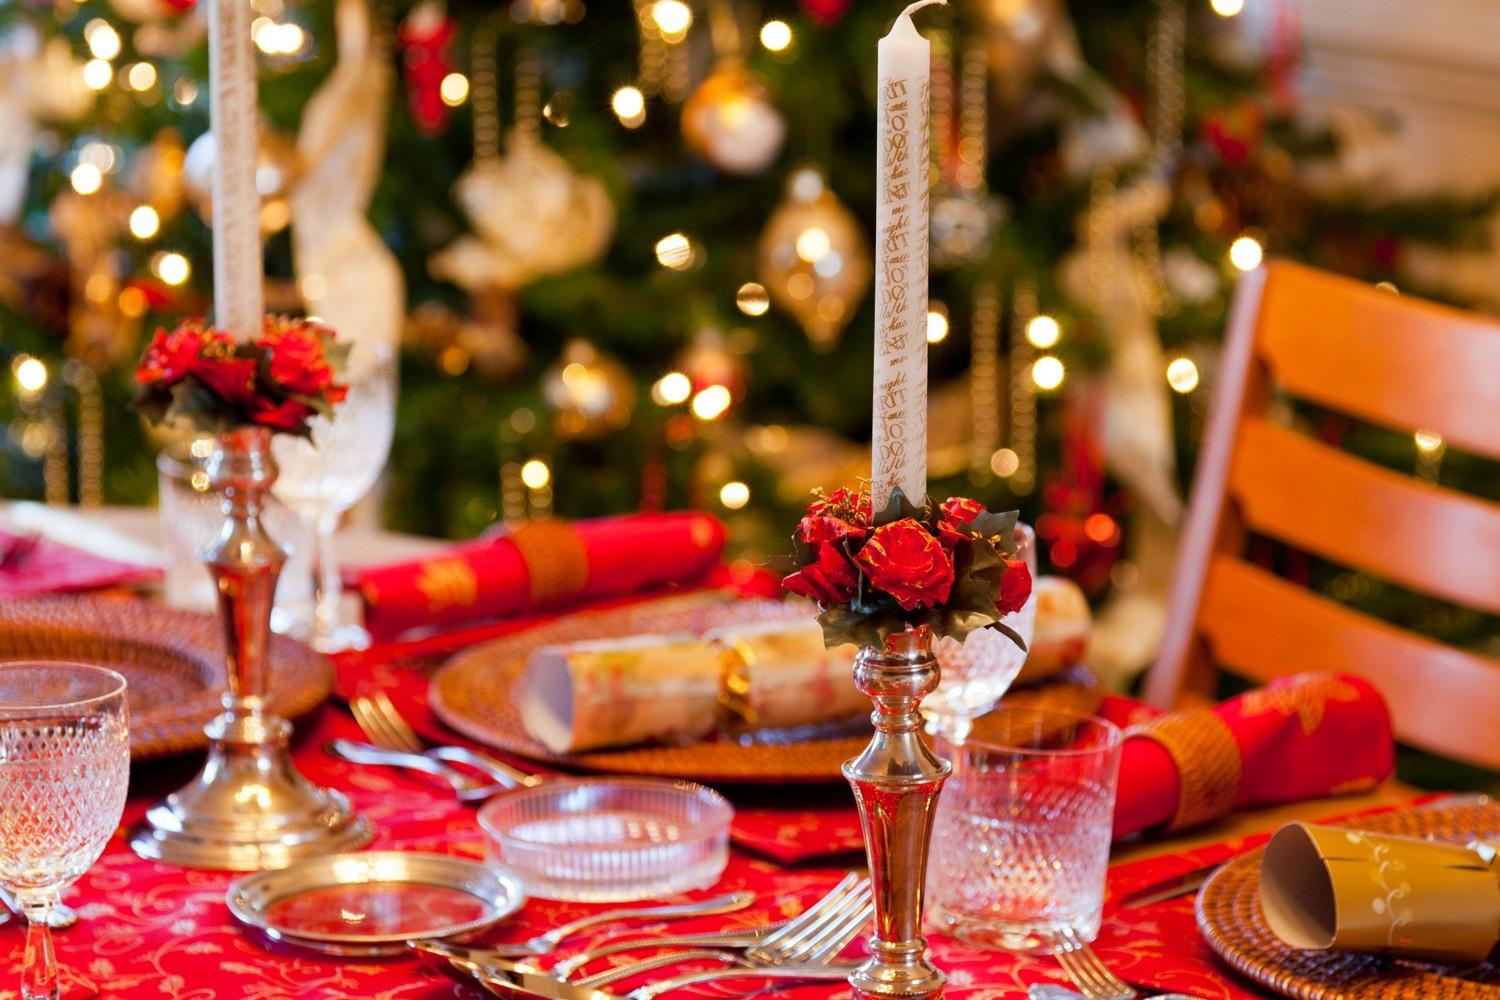  Natale 2015, gli italiani hanno speso a tavola 2,2 mld di euro per cibi e bevande